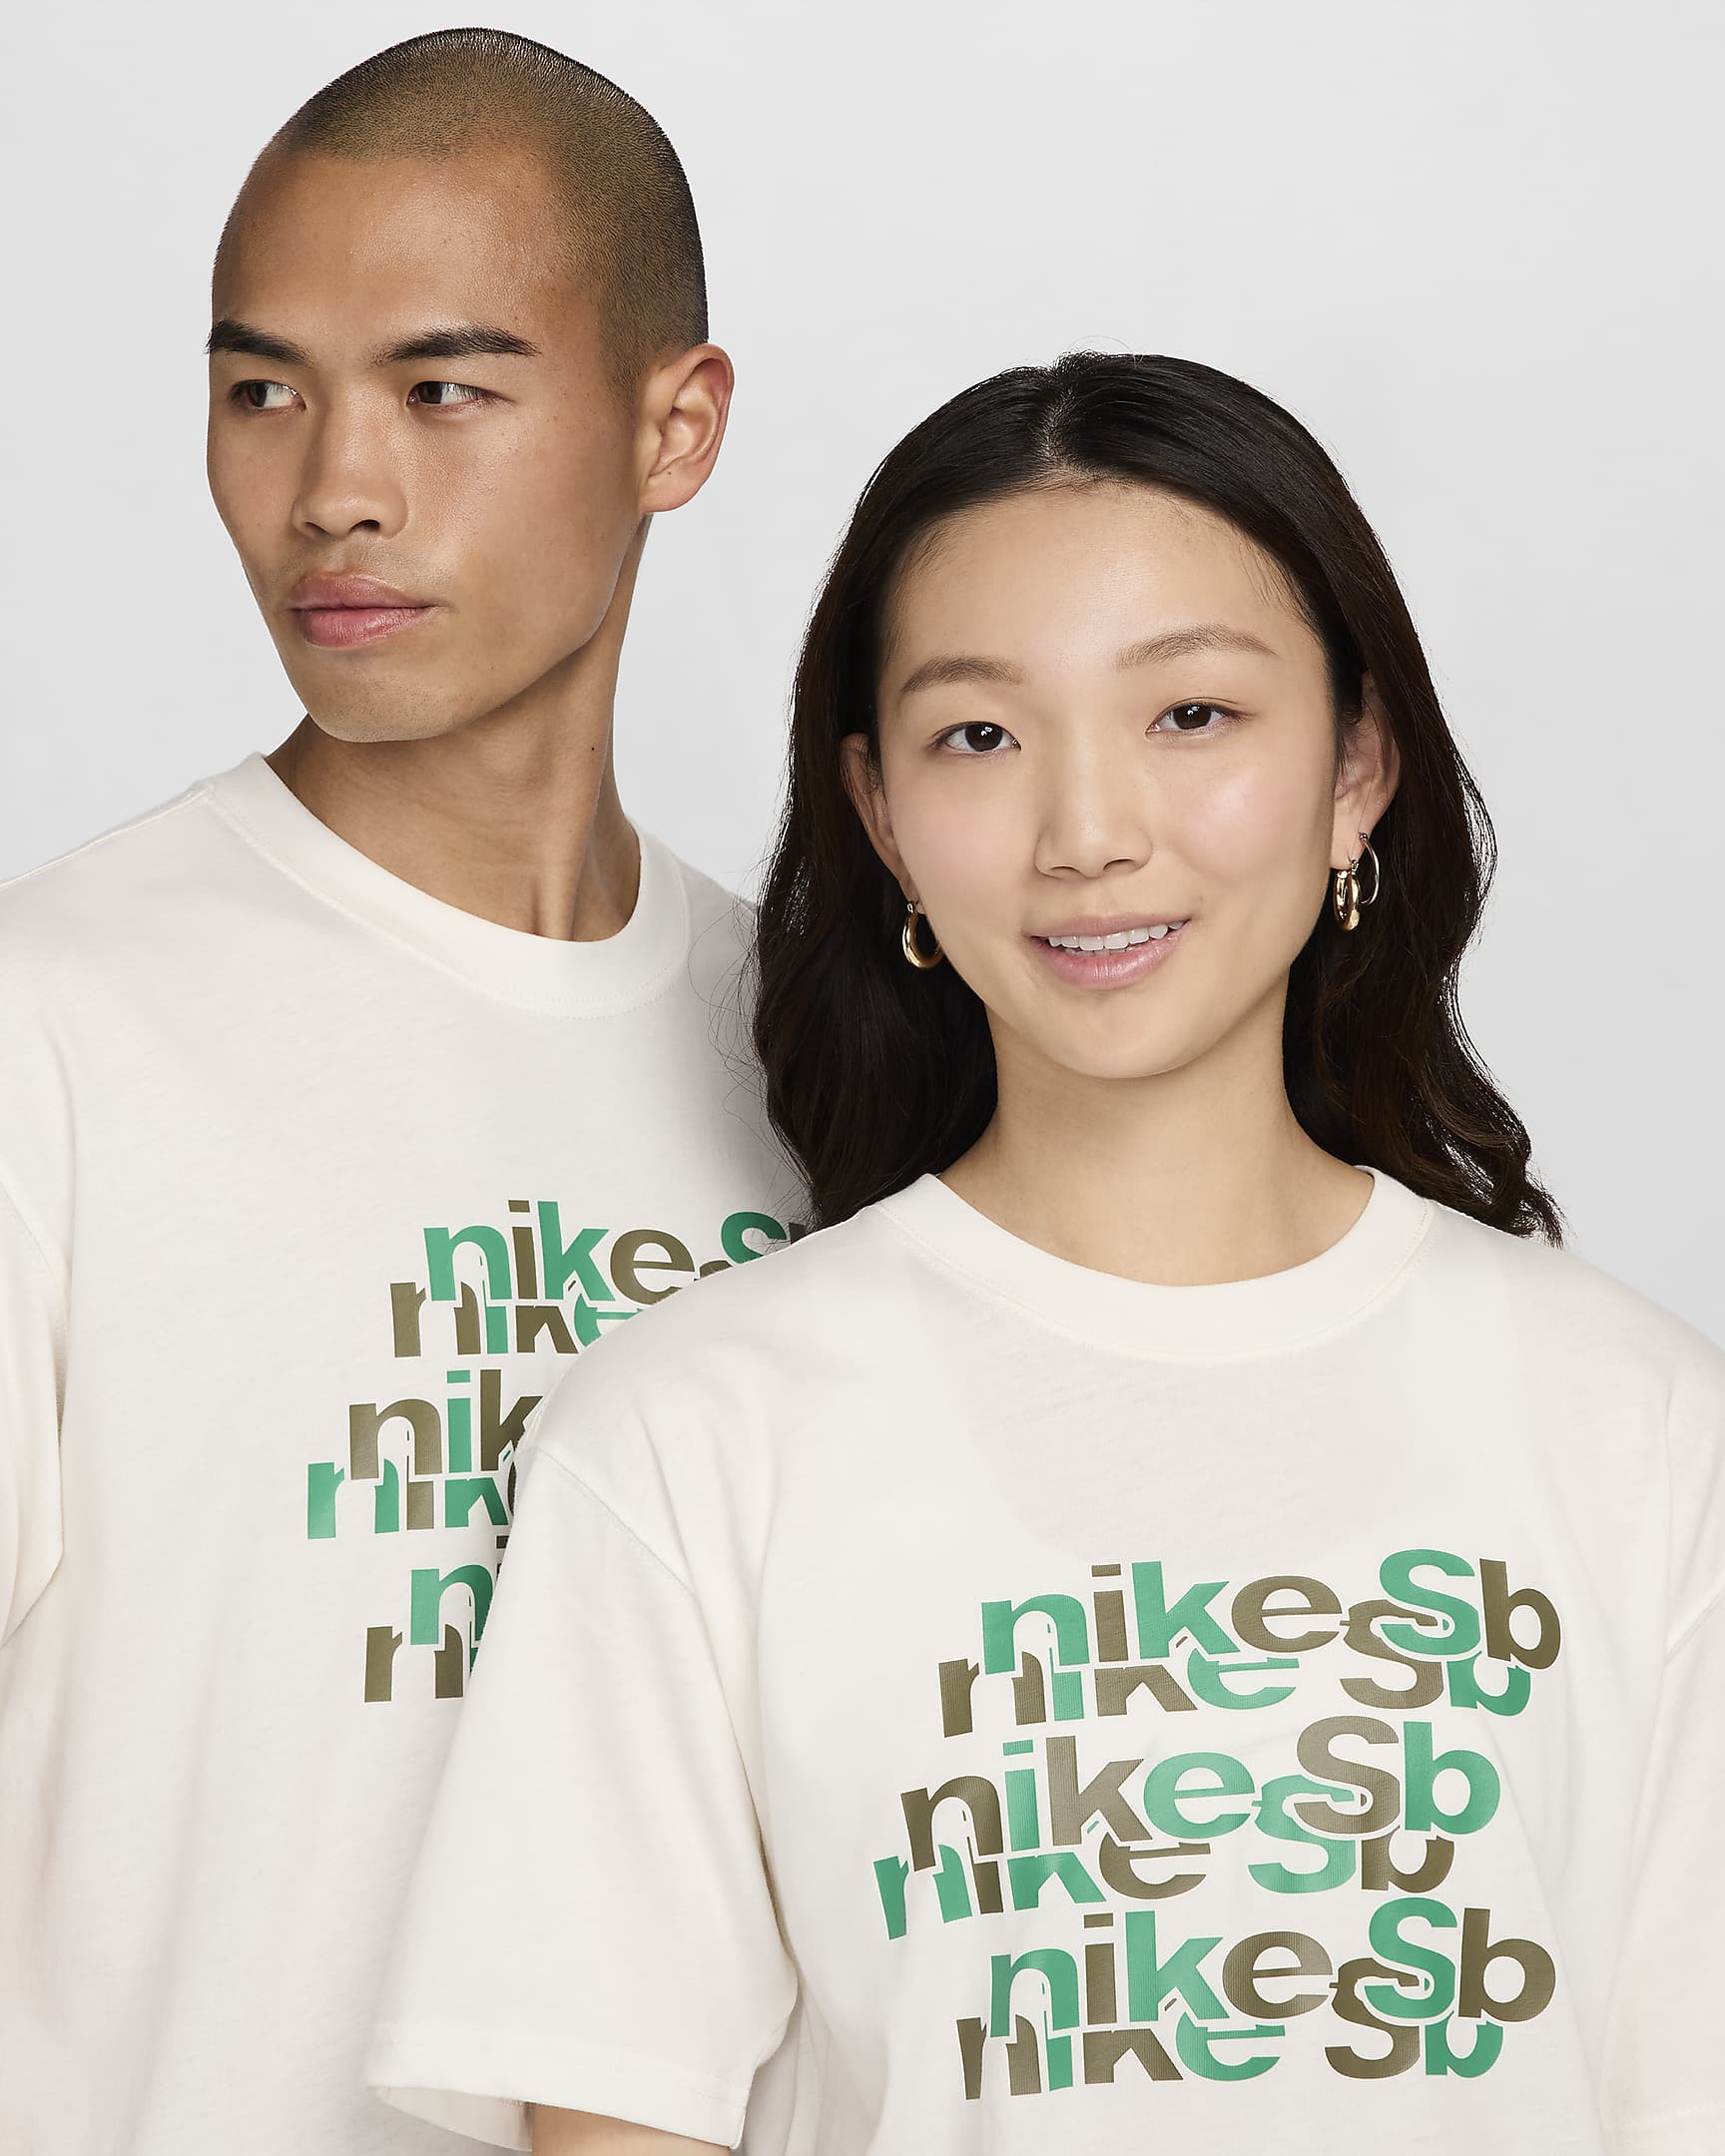 Nike SB Skate T-Shirt - Sail